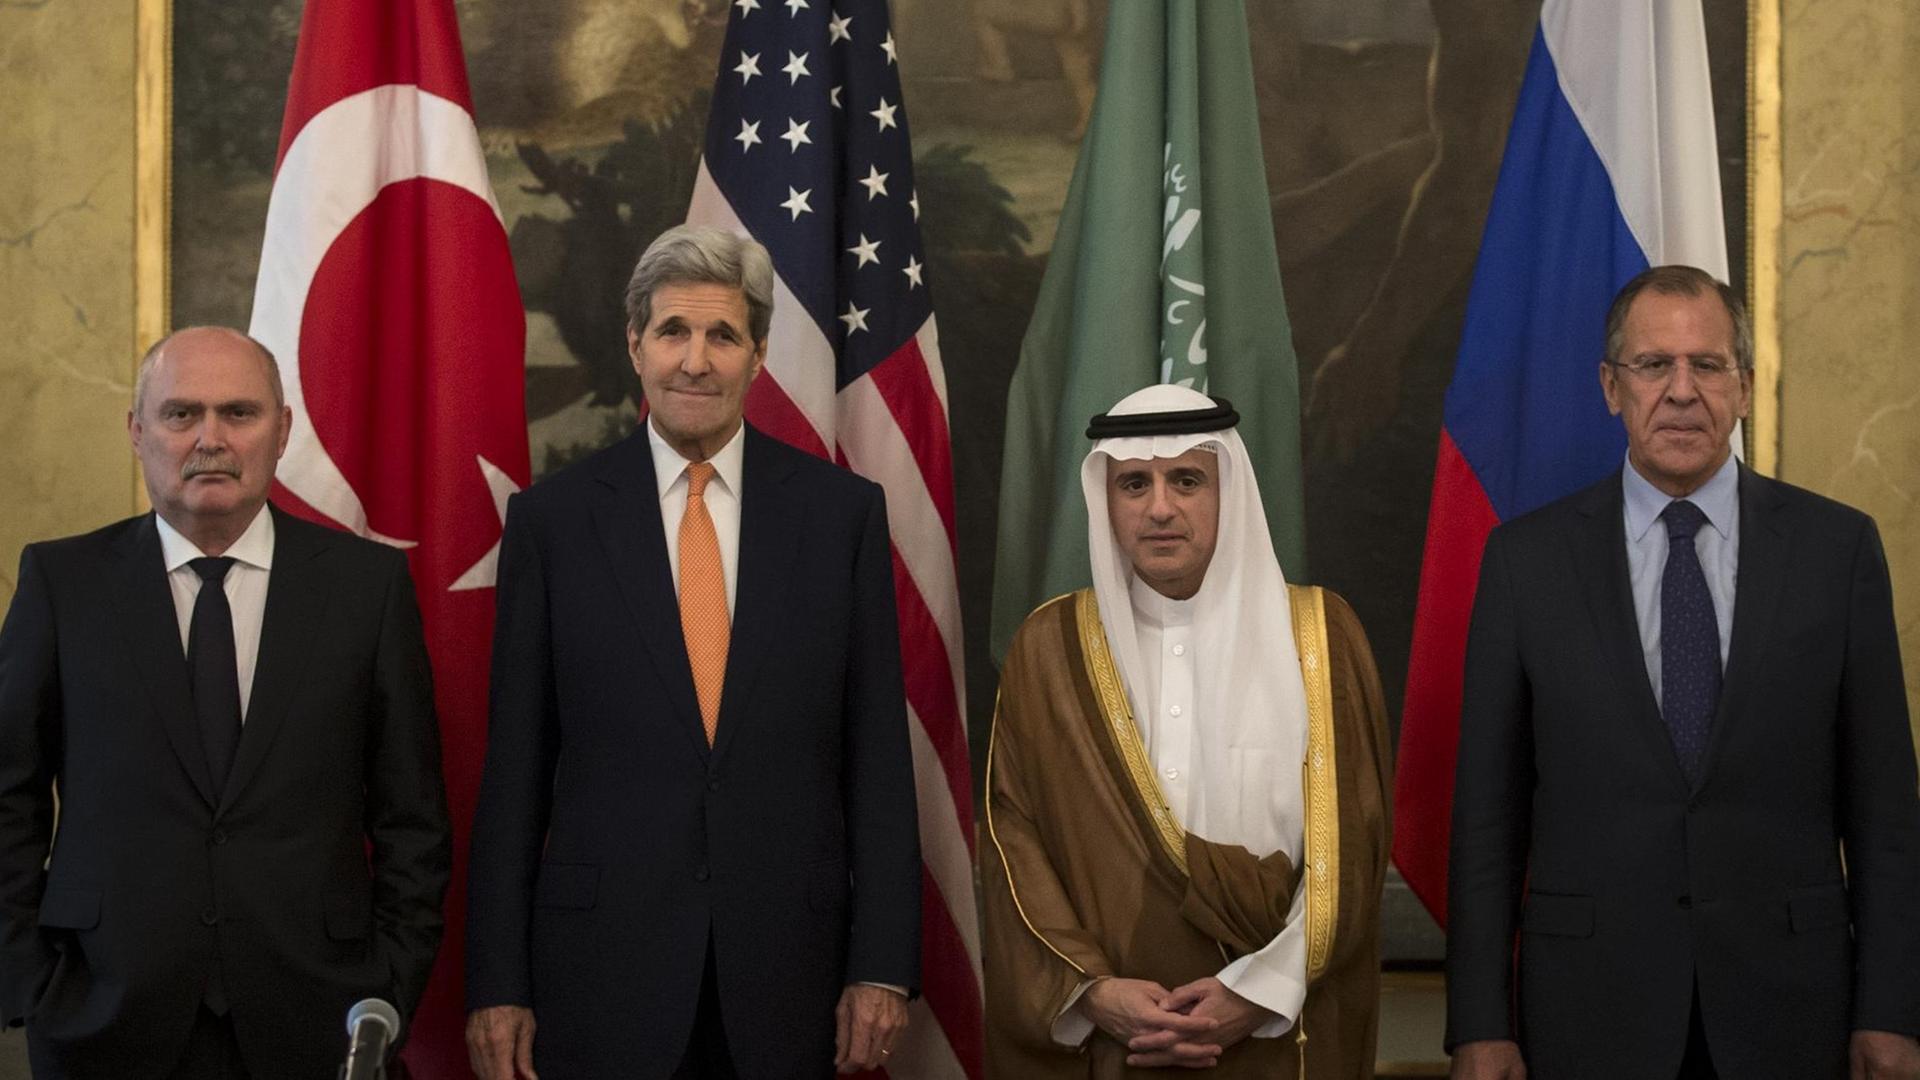 Die vier Außenminister stehen in einem Raum nebeneinander vor den Flaggen ihrer Staaten, die wiederum vor einem Gemälde stehen. Der saudische Ressortchef trägt die traditionelle Kleidung seines Landes.